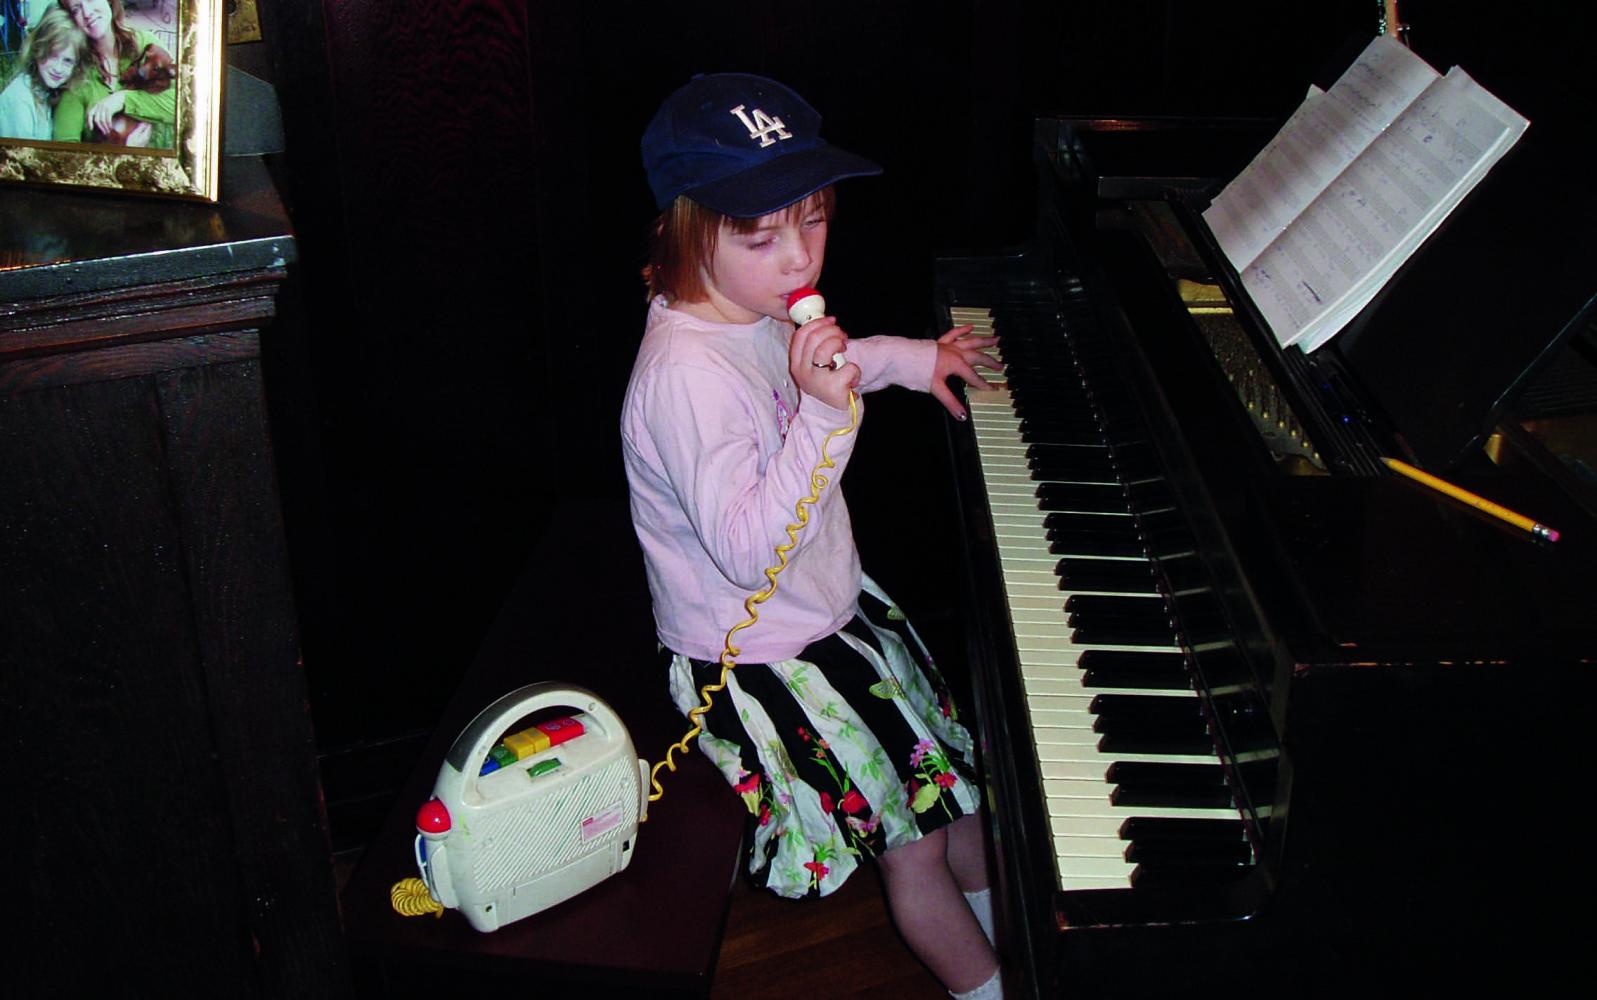 Musikinstrumente und Mikrofone tauchen in vielen der frühen Kindheitsfotos auf